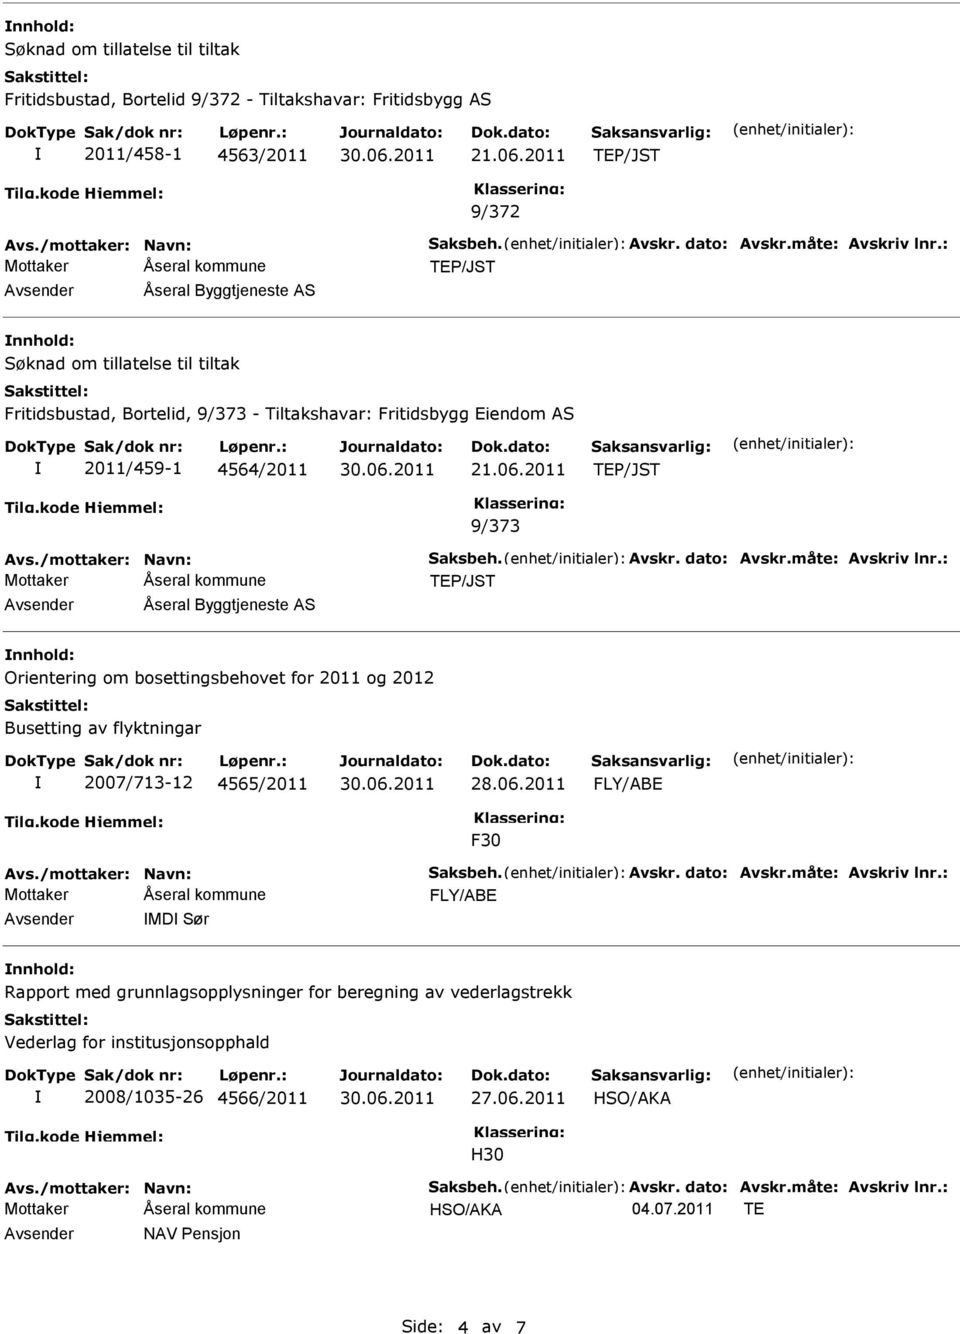 2011 9/373 nnhold: Orientering om bosettingsbehovet for 2011 og 2012 Busetting av flyktningar 2007/713-12 4565/2011 28.06.